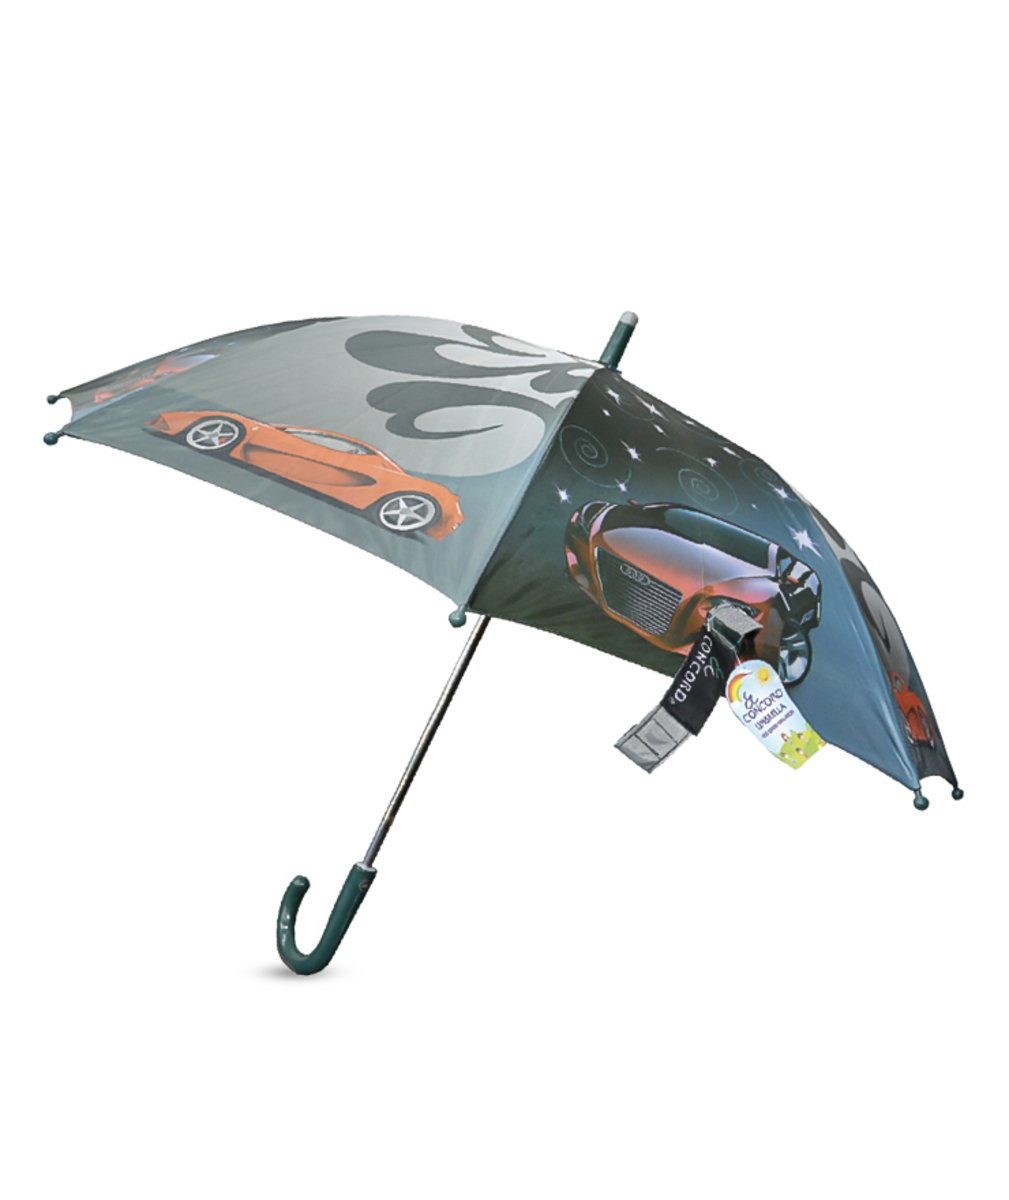 Concord Children's Umbrella UMB-1105